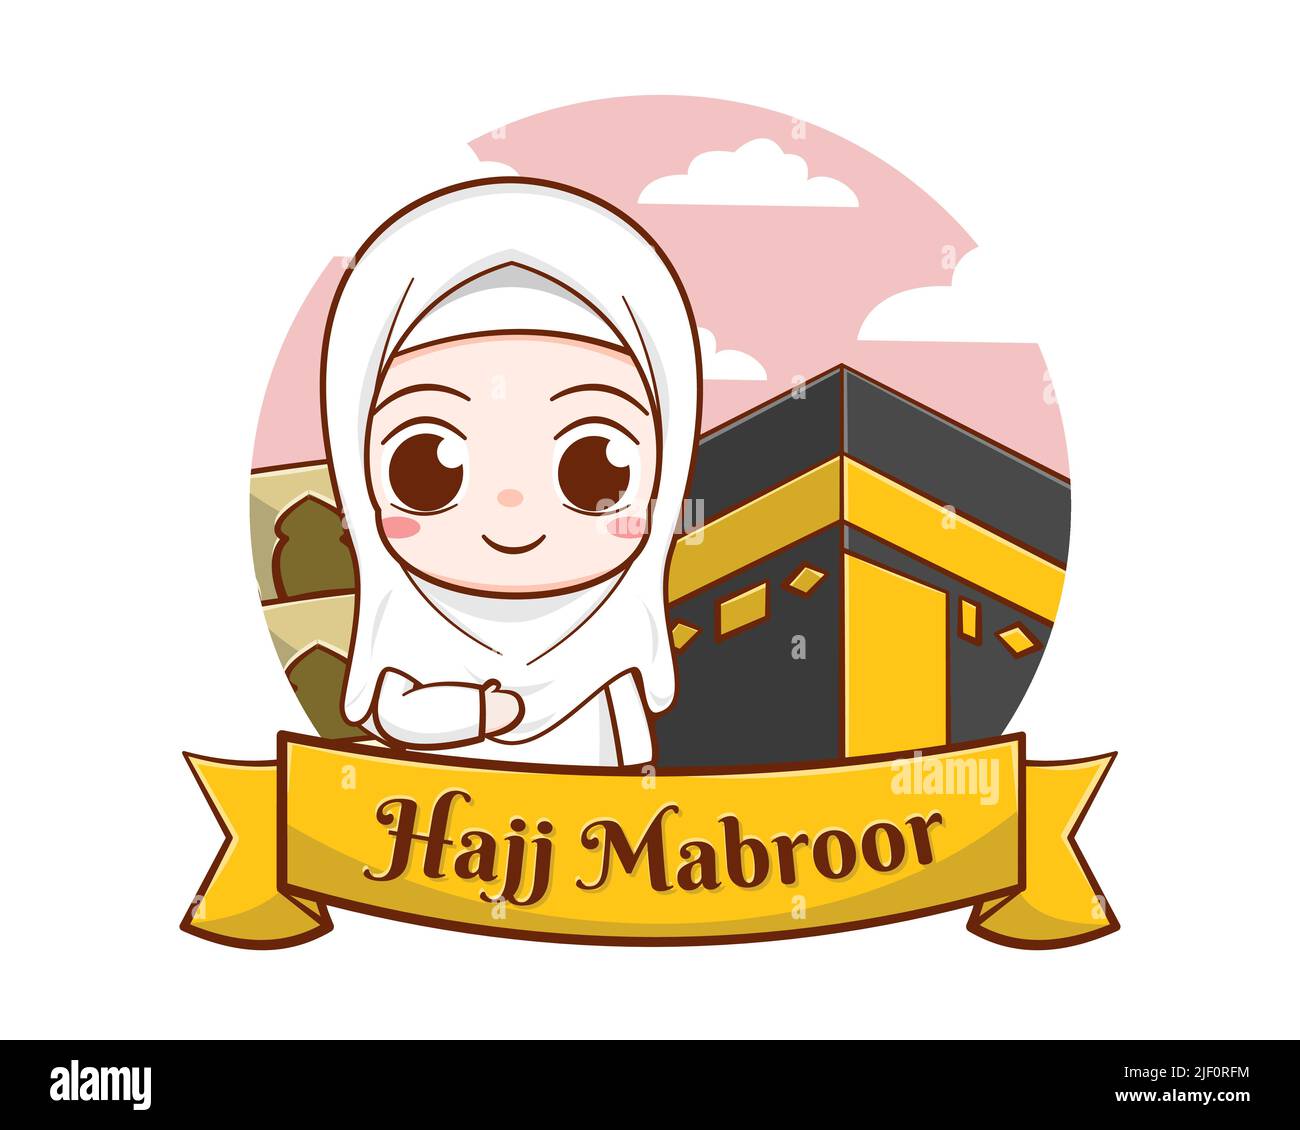 Peregrinaje islámico del hayy con la muchacha linda y la ilustración de la caricatura de kaaba Ilustración del Vector